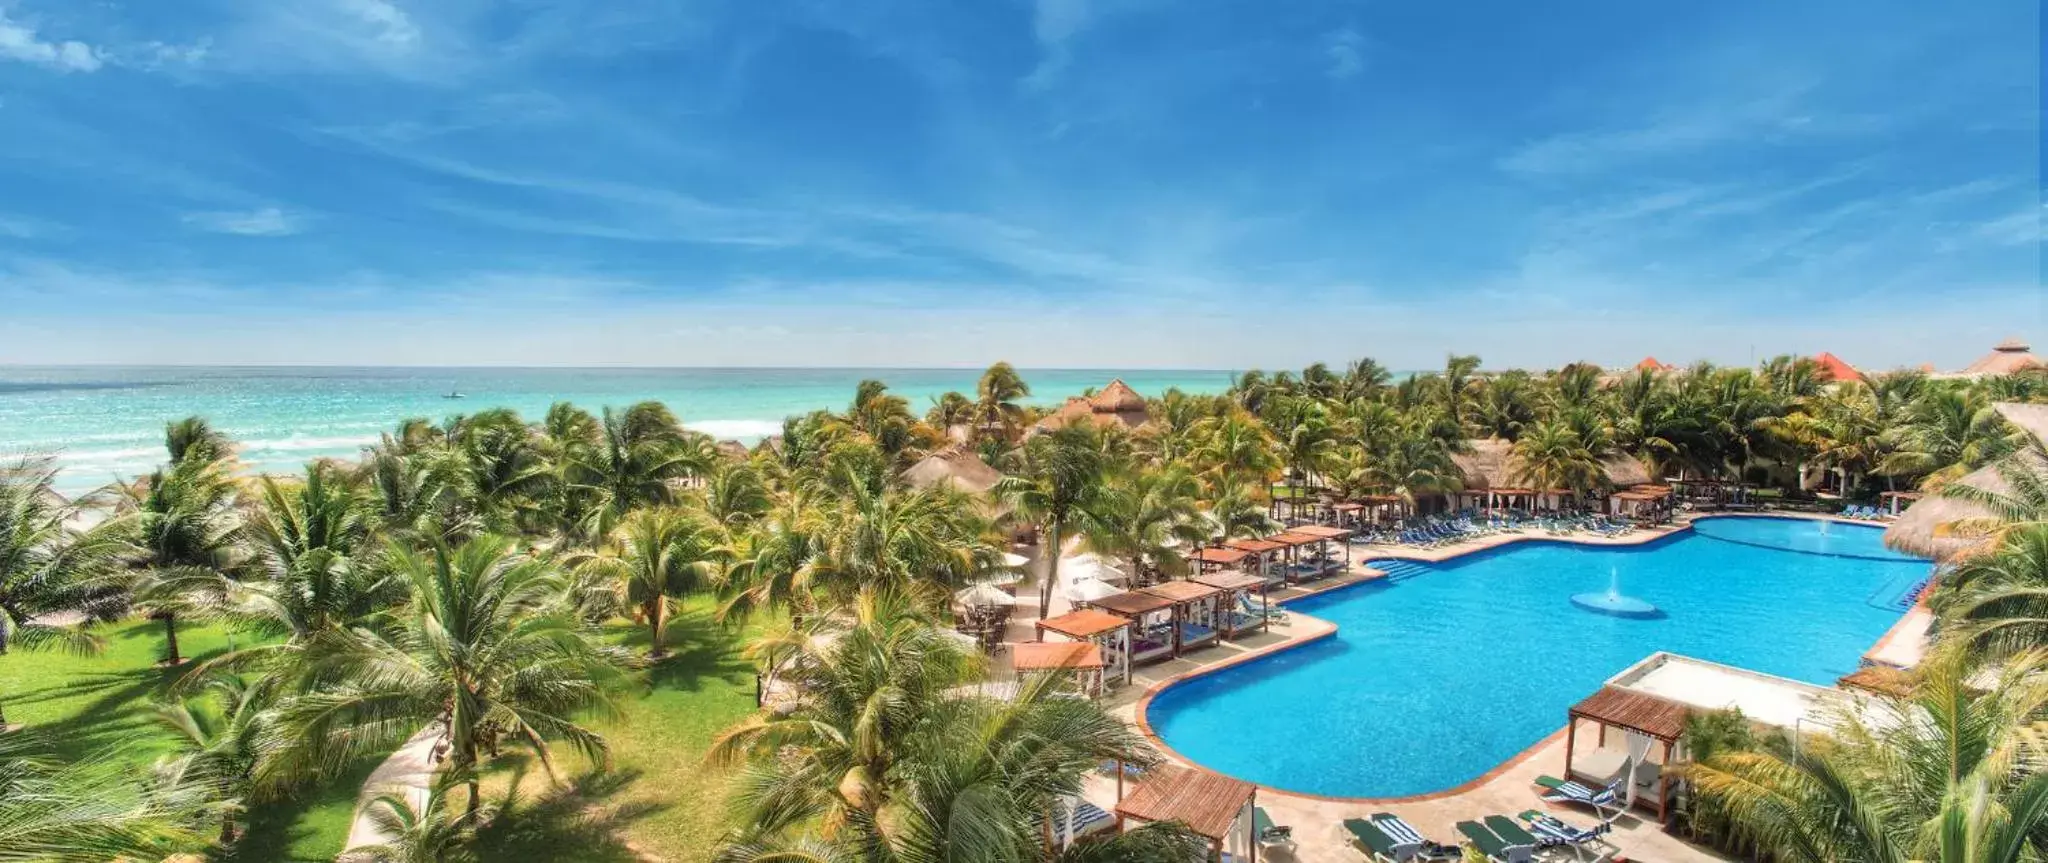 Bird's eye view, Pool View in El Dorado Royale Gourmet Inclusive Resort & Spa by Karisma - All Inclusive